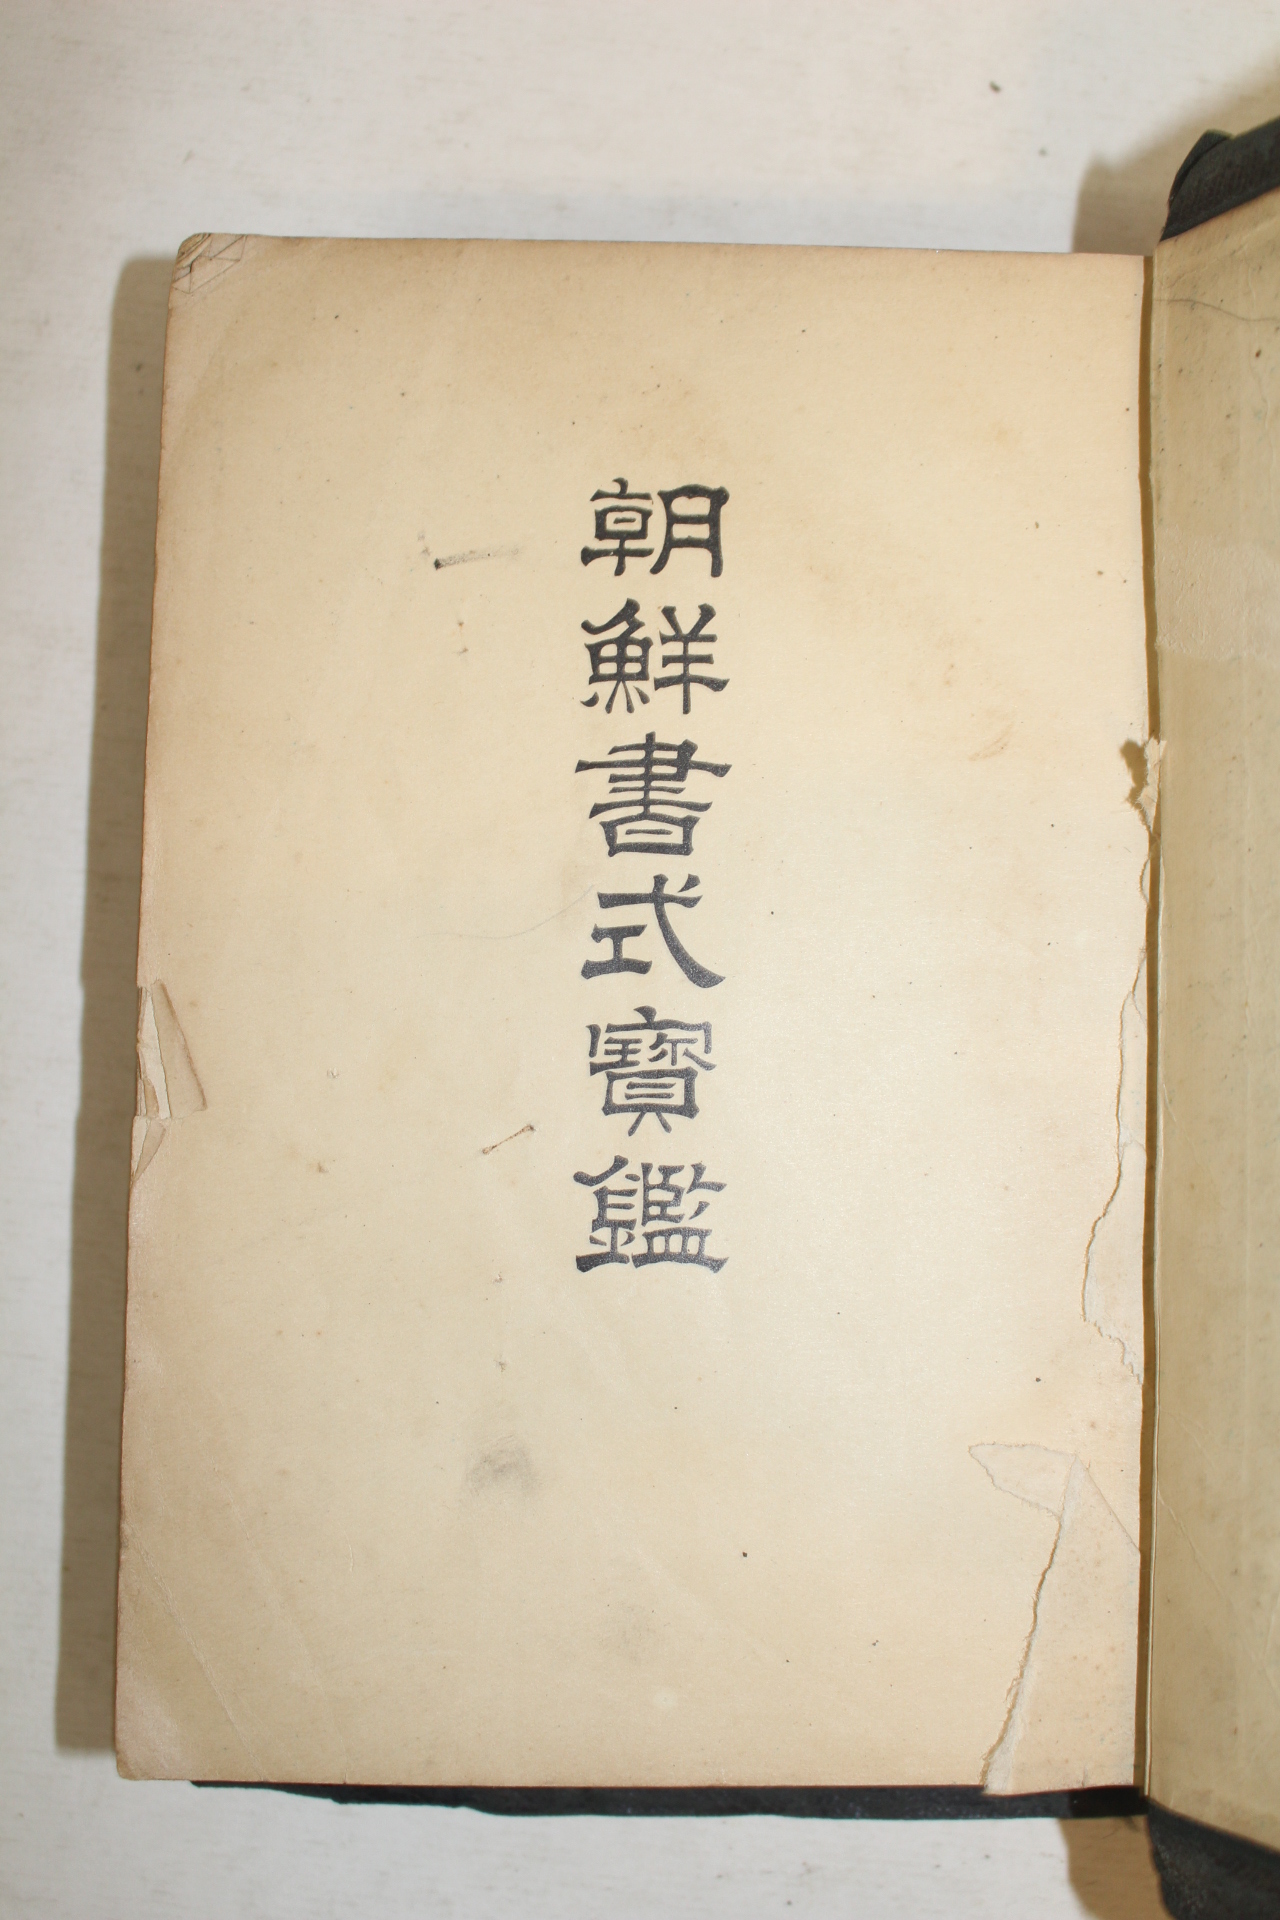 1937년 경성간행 조선서식보감(朝鮮書式寶鑑)